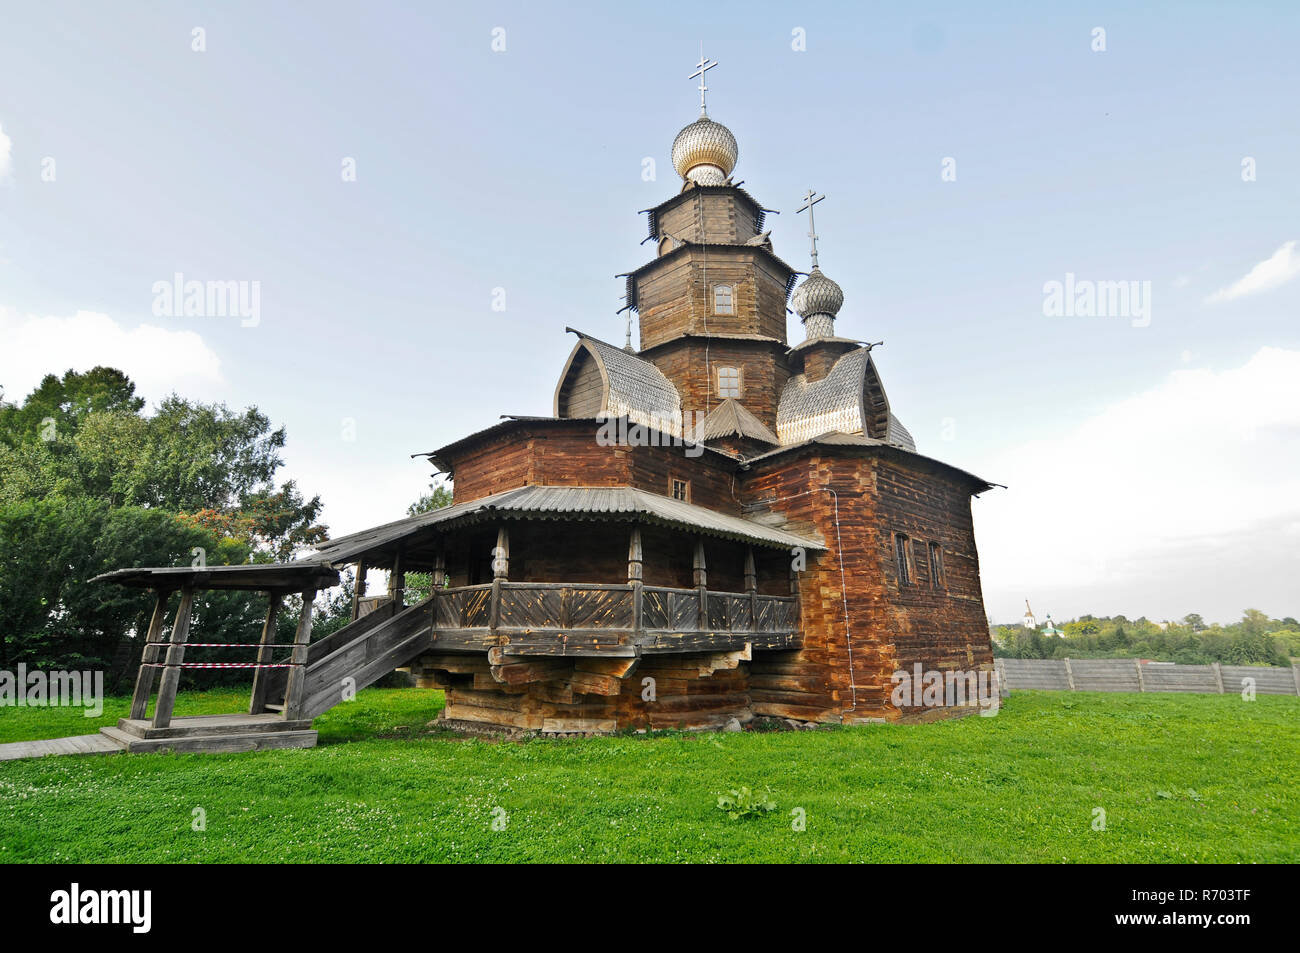 Musée de l'architecture en bois et de la vie paysanne - l'ancienne église en bois. Suzdal, Russie Banque D'Images